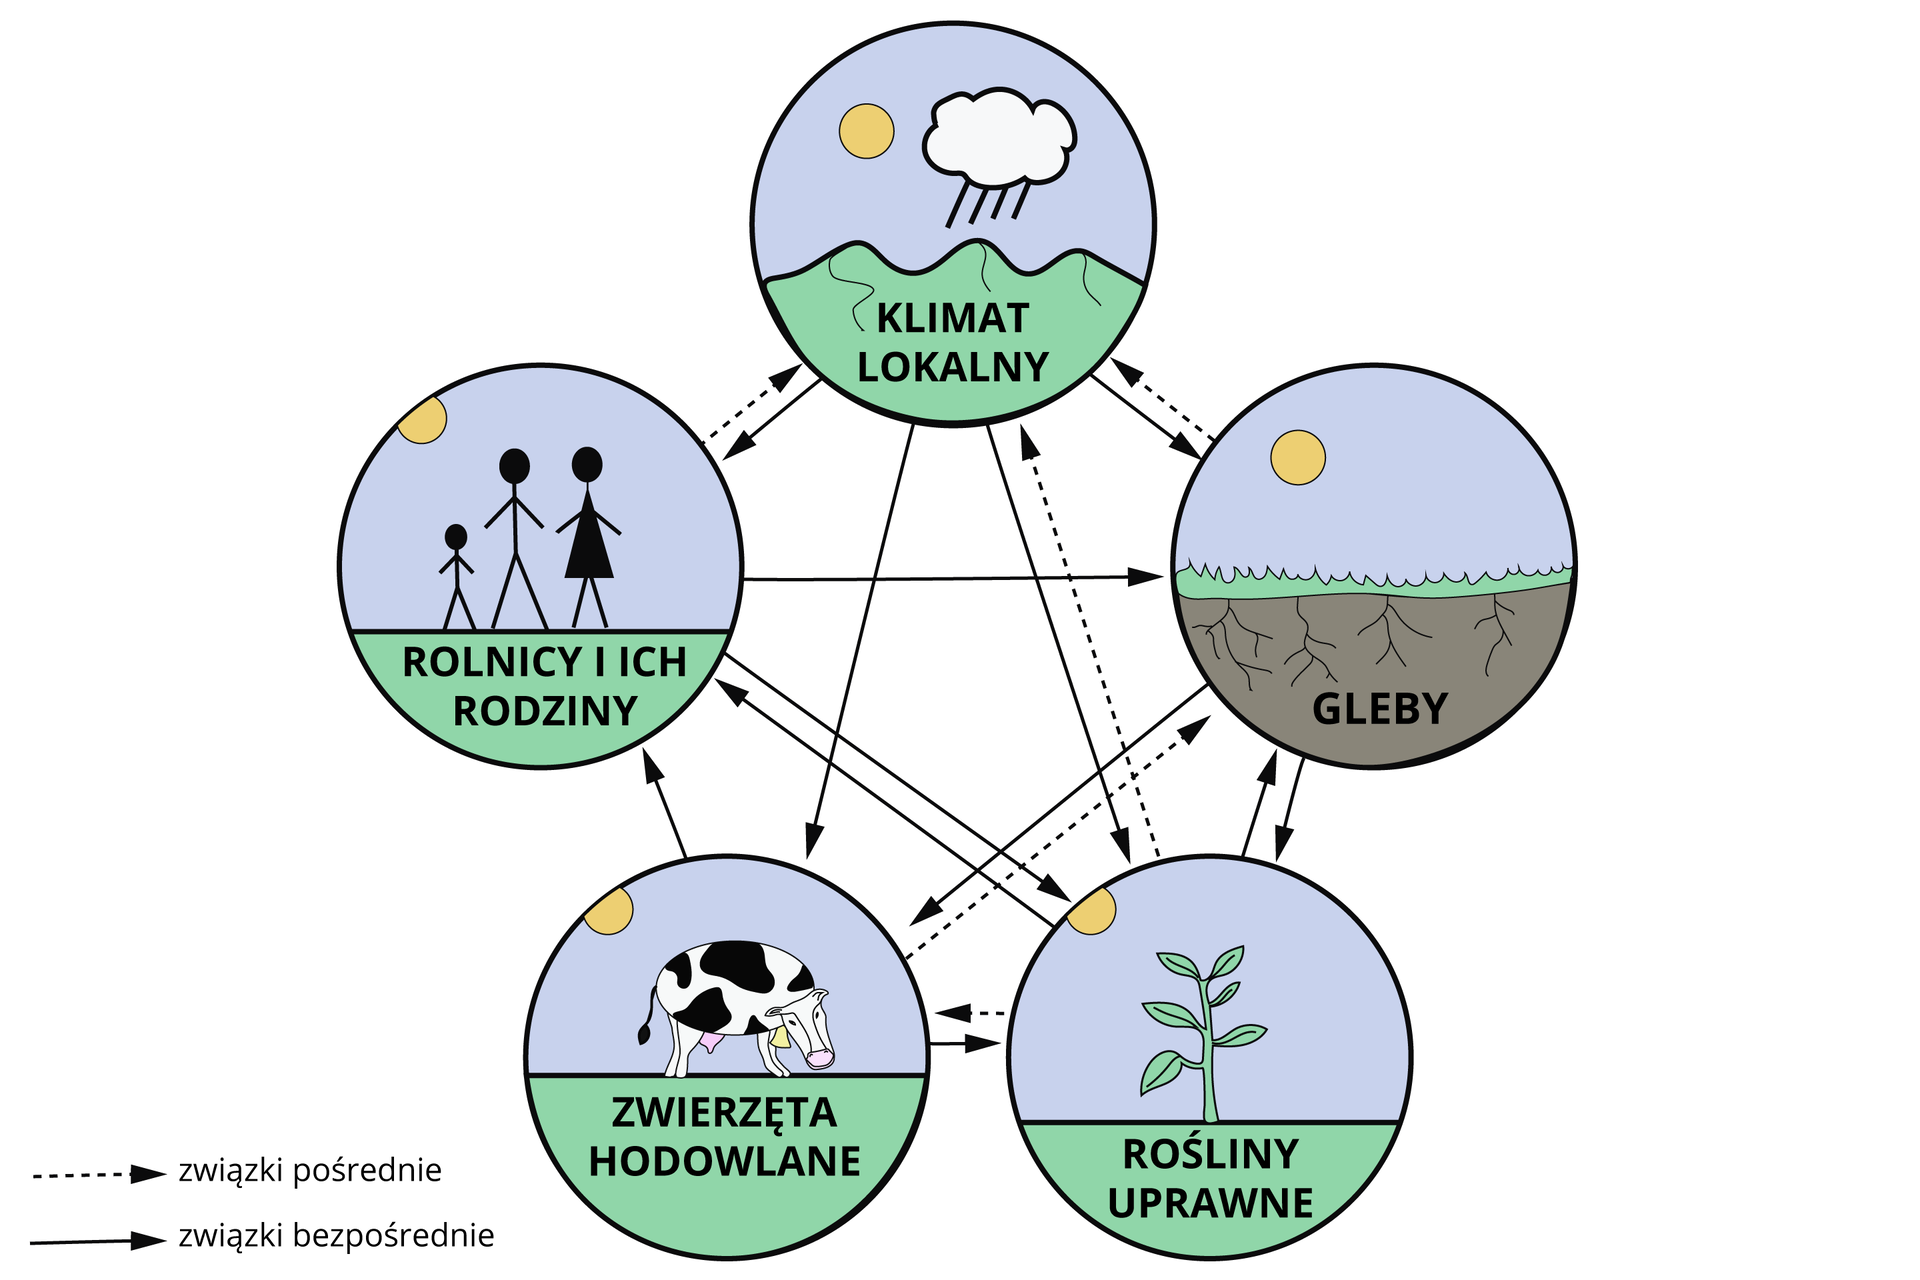 Grafika przedstawia relacje pomiędzy elementami środowiska oraz rolnictwem uprzemysłowionym. W kółkach są obrazki - chmura ze słońcem i pagórkami - to klimat lokalny; trawa, korzenie i ziemia, nad nimi słońce - to gleby; roślina liściasta i słońce - rośliny uprawne; pasąca się krowa i słońce - zwierzęta hodowlane; trzy ludziki - mama, tata i dziecko - rolnicy i ich rodziny. Pomiędzy kółkami są liczne strzałki. Jedne zaznaczono liniami przerywanymi, inne ciągłymi. Linie przerywane to związki pośrednie. Występują na grafice pomiędzy zwierzętami hodowlanymi a glebami, roślinami uprawnymi a zwierzętami hodowlanymi, roślinami uprawnymi a klimatem lokalnym, rolnikami i ich rodzinami a klimatem lokalnym oraz glebami a klimatem lokalnym. Związki bezpośrednie występują pomiędzy: klimatem a wszystkimi elementami na grafice, zwierzętami hodowlanymi a roślinami uprawnymi i rolnikami i ich rodzinami, roślinami uprawnymi a rolnikami i ich rodzinami oraz glebami, pomiędzy glebami a roślinami upranymi i zwierzętami hodowlanymi. Rolnicy i ich rodziny mają relacje bezpośrednie pomiędzy glebami oraz roślinami uprawnymi.     